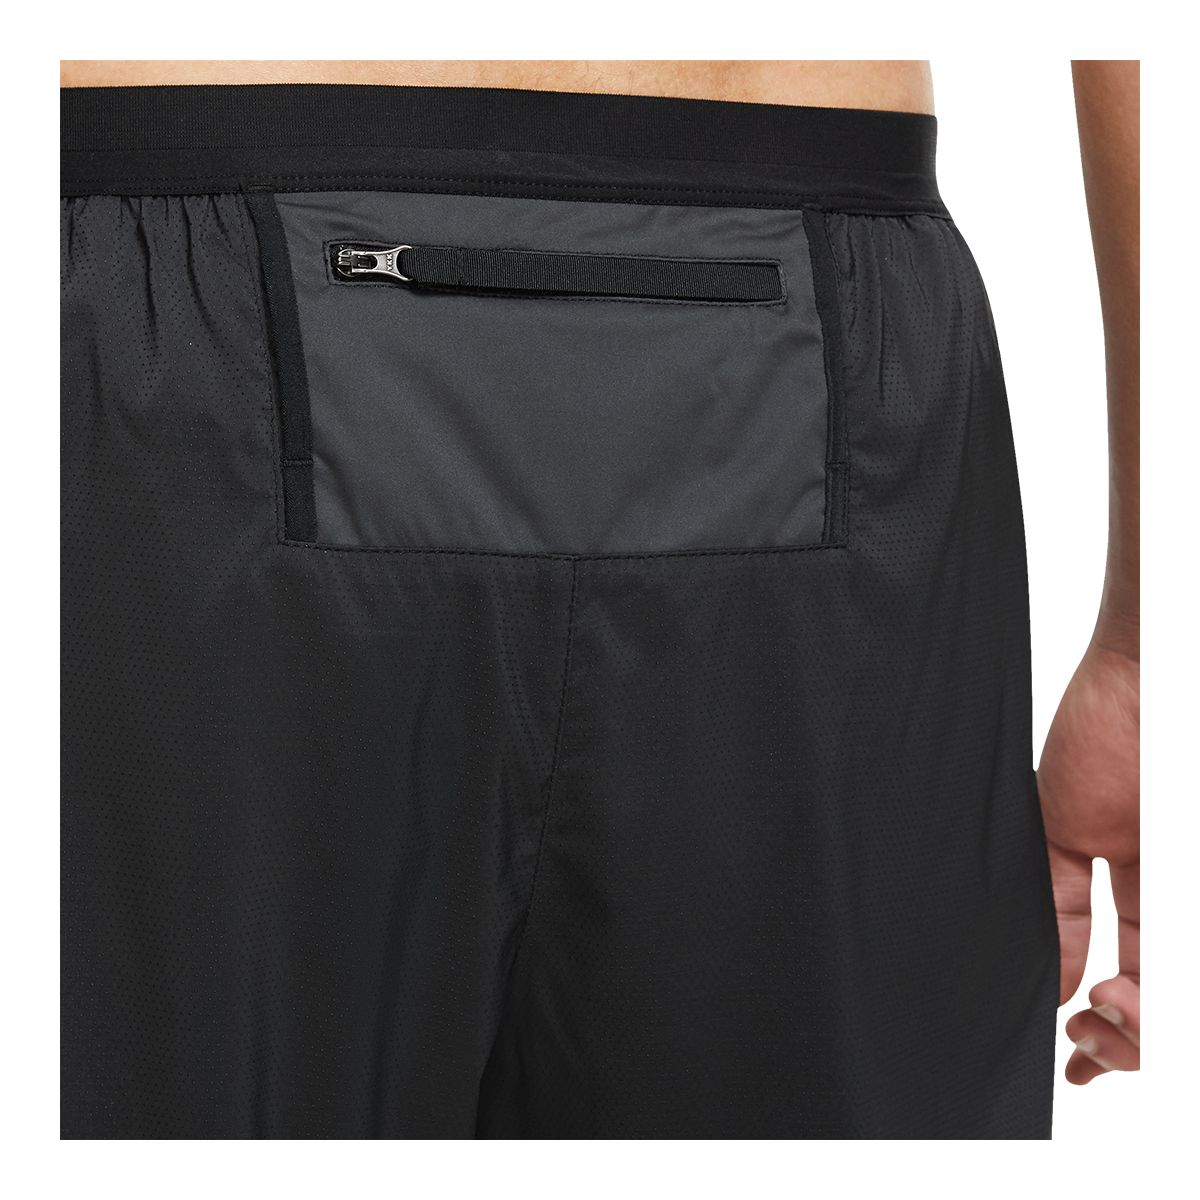 Nike Phenom Elite Woven Running Pants - Running trousers Men's, Buy online